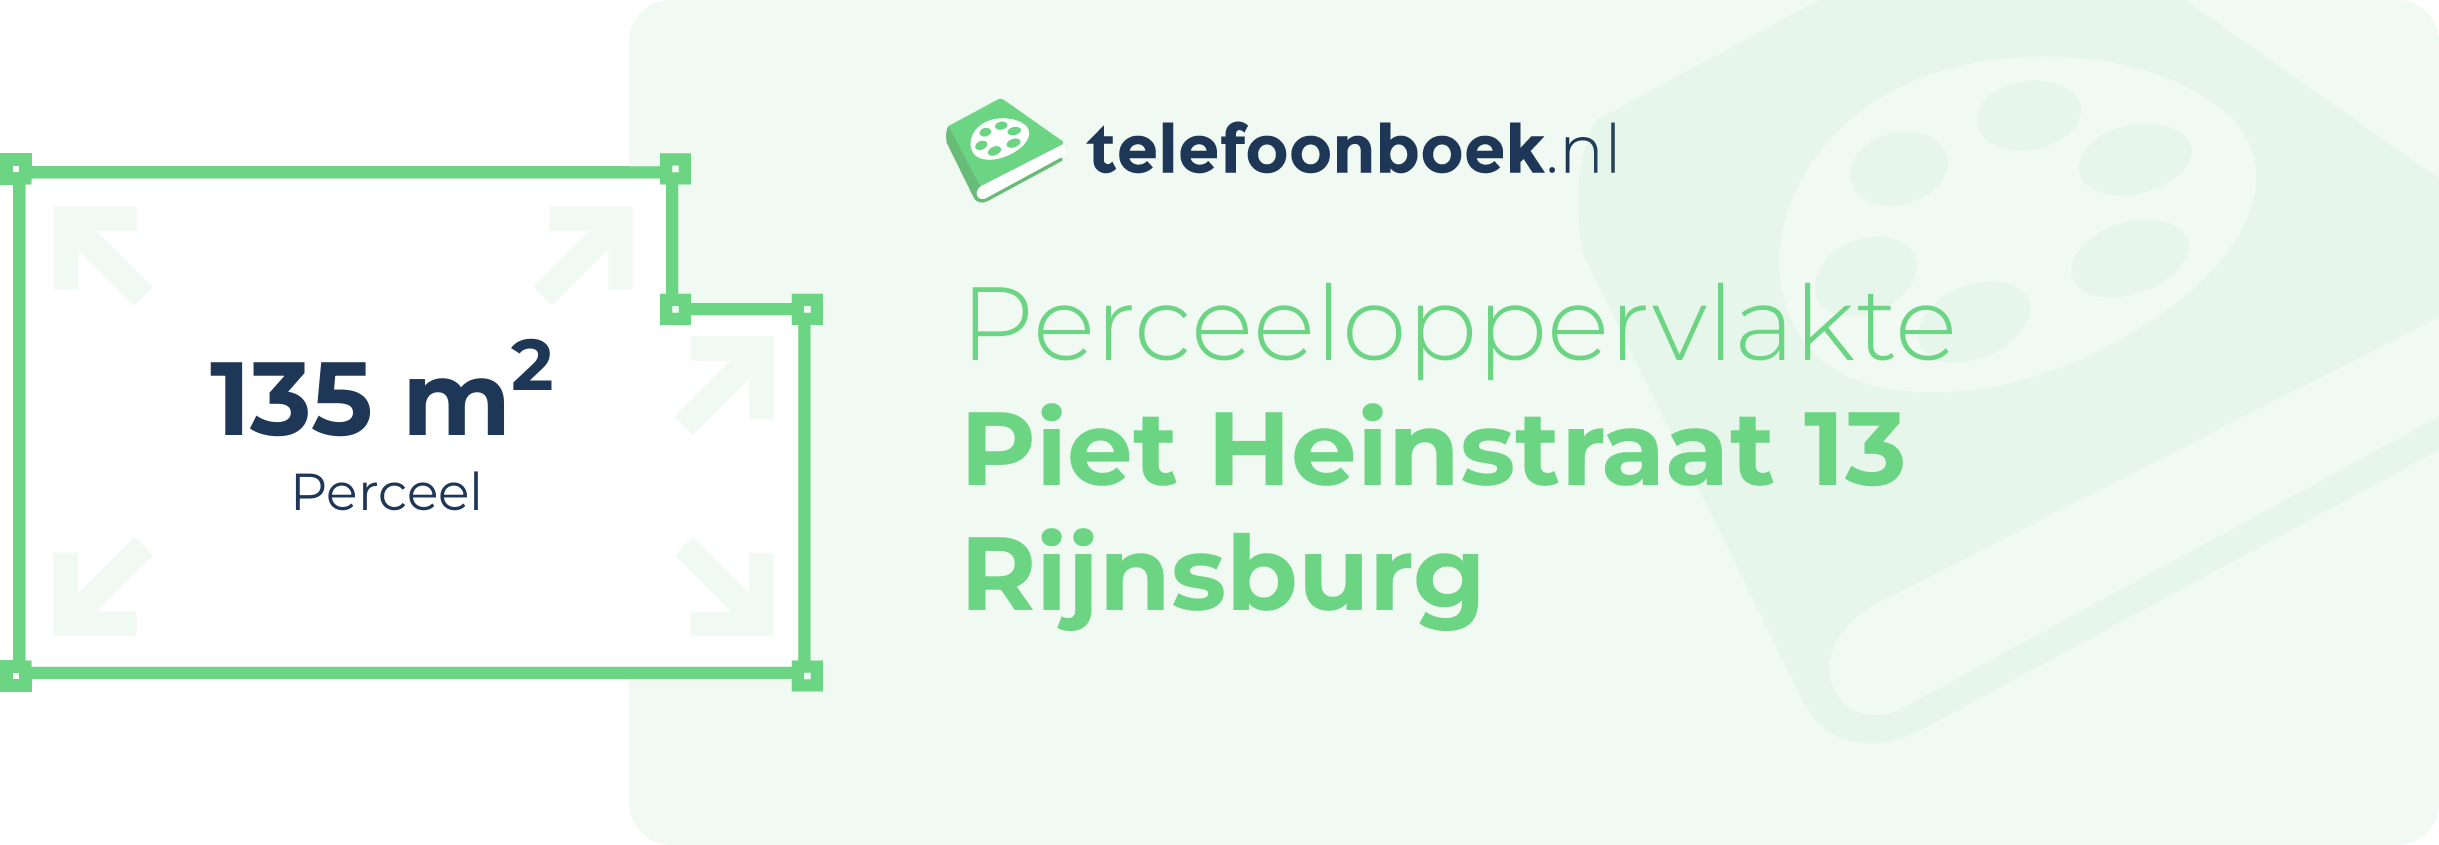 Perceeloppervlakte Piet Heinstraat 13 Rijnsburg